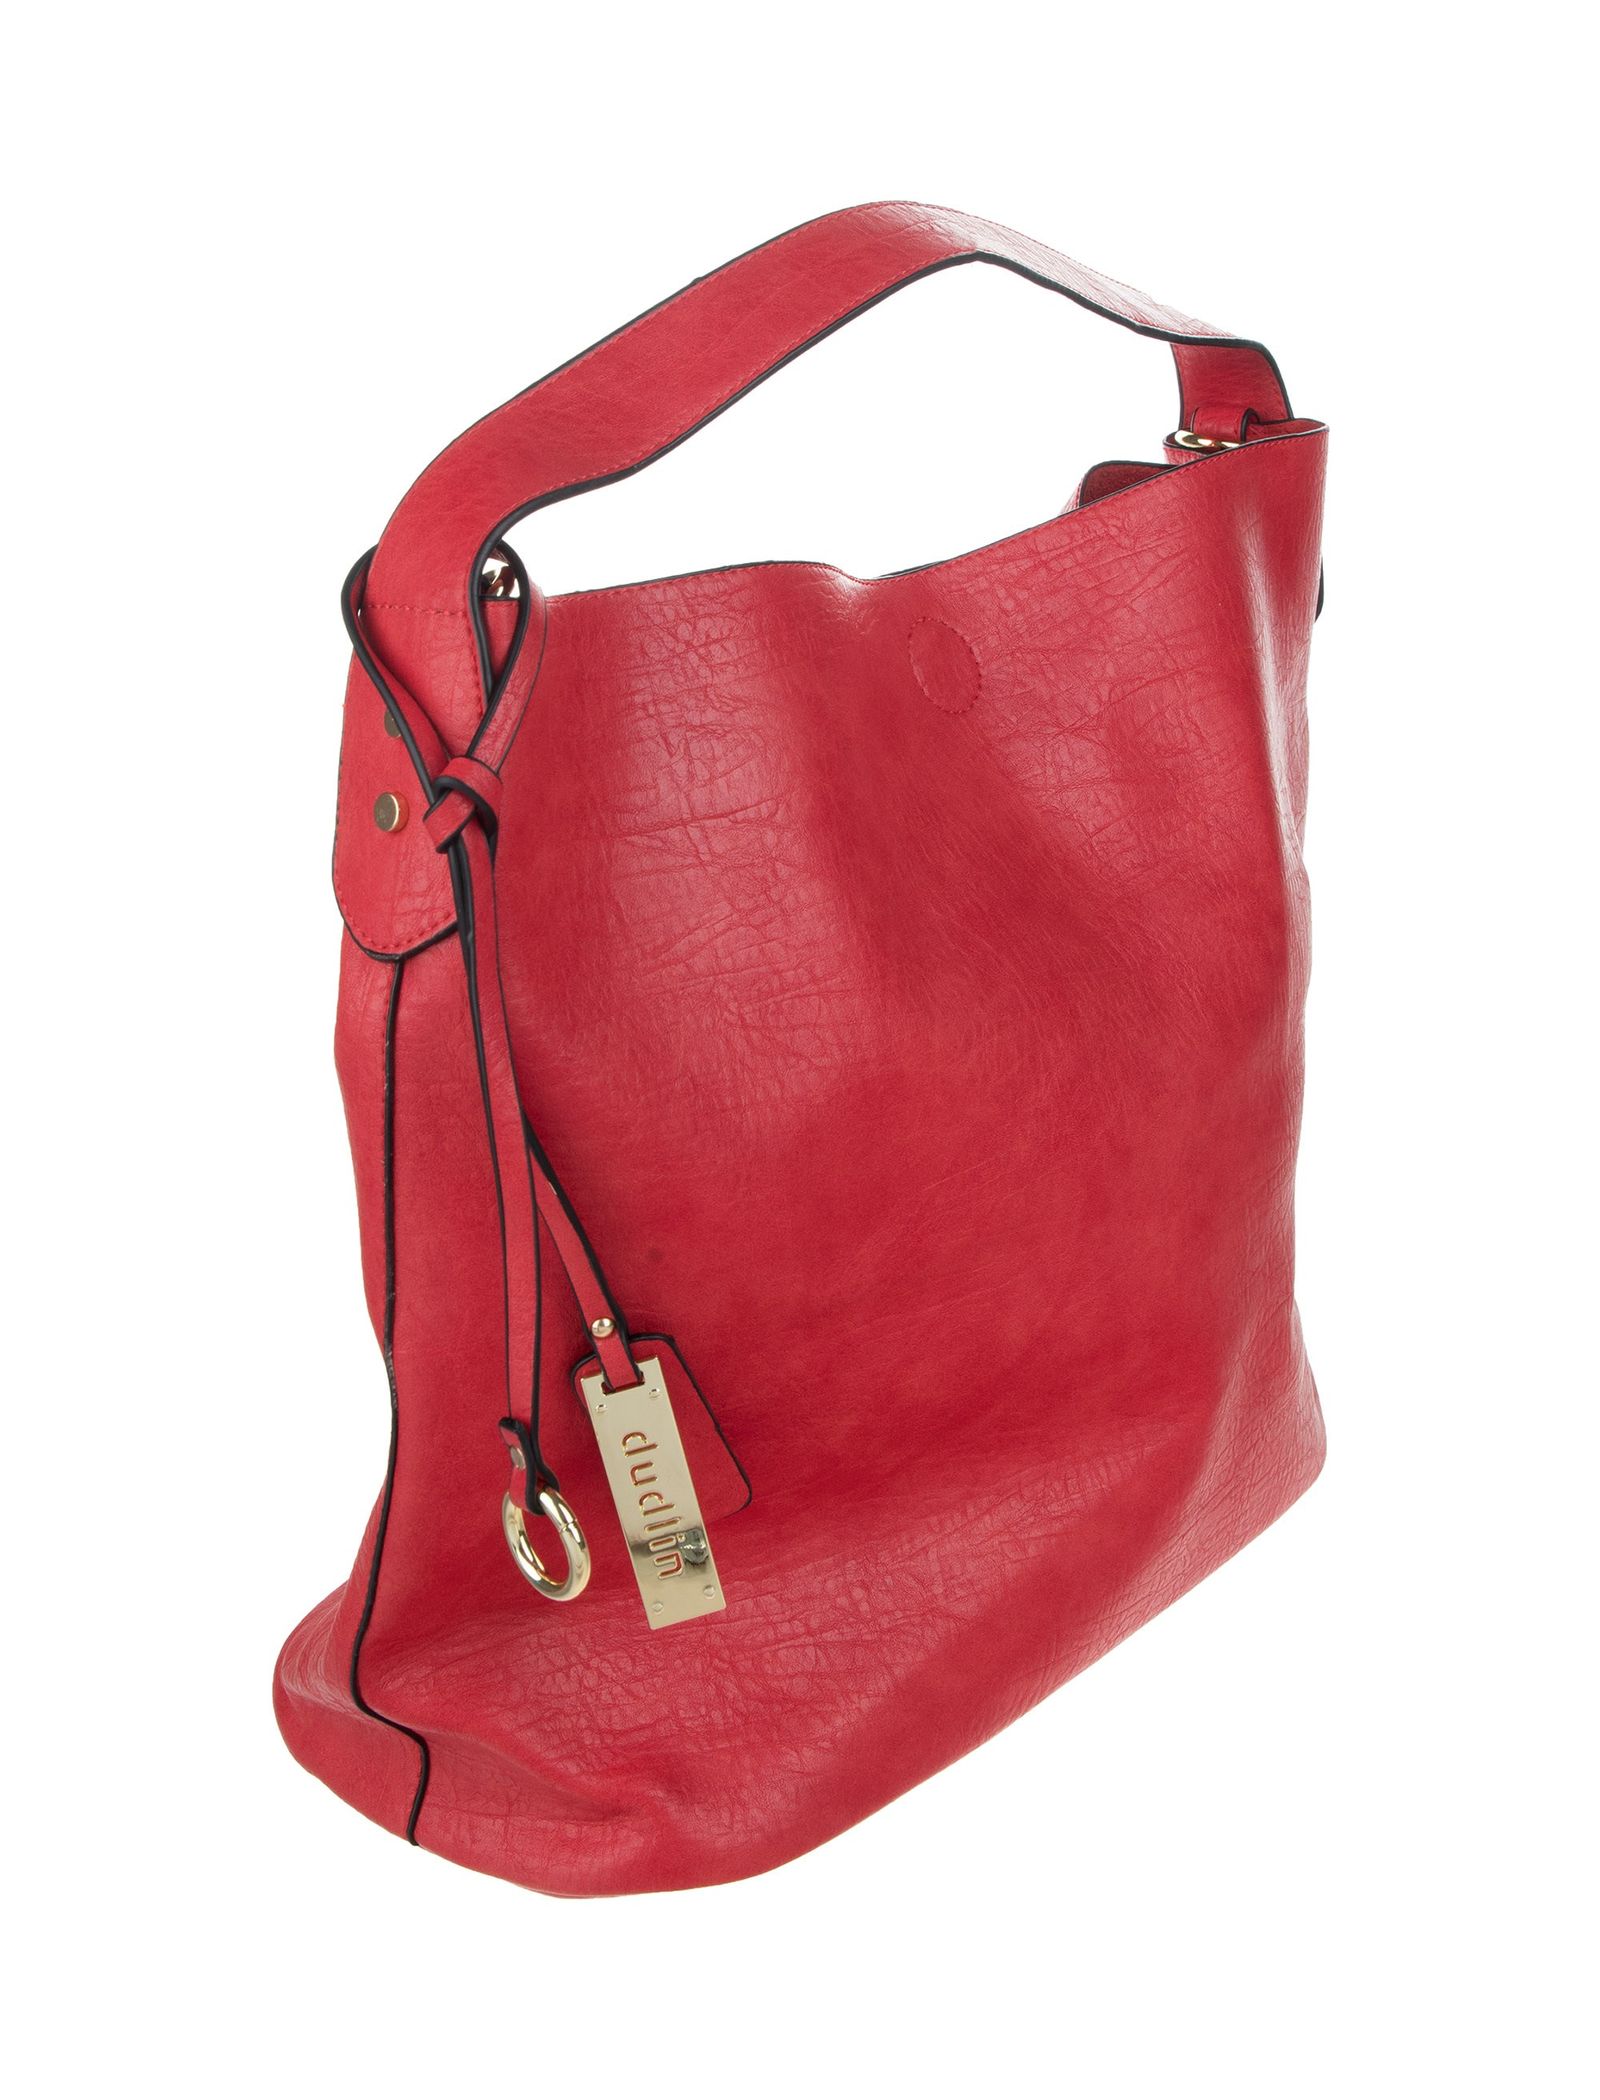 کیف دستی روزمره زنانه - دادلین تک سایز - قرمز - 6